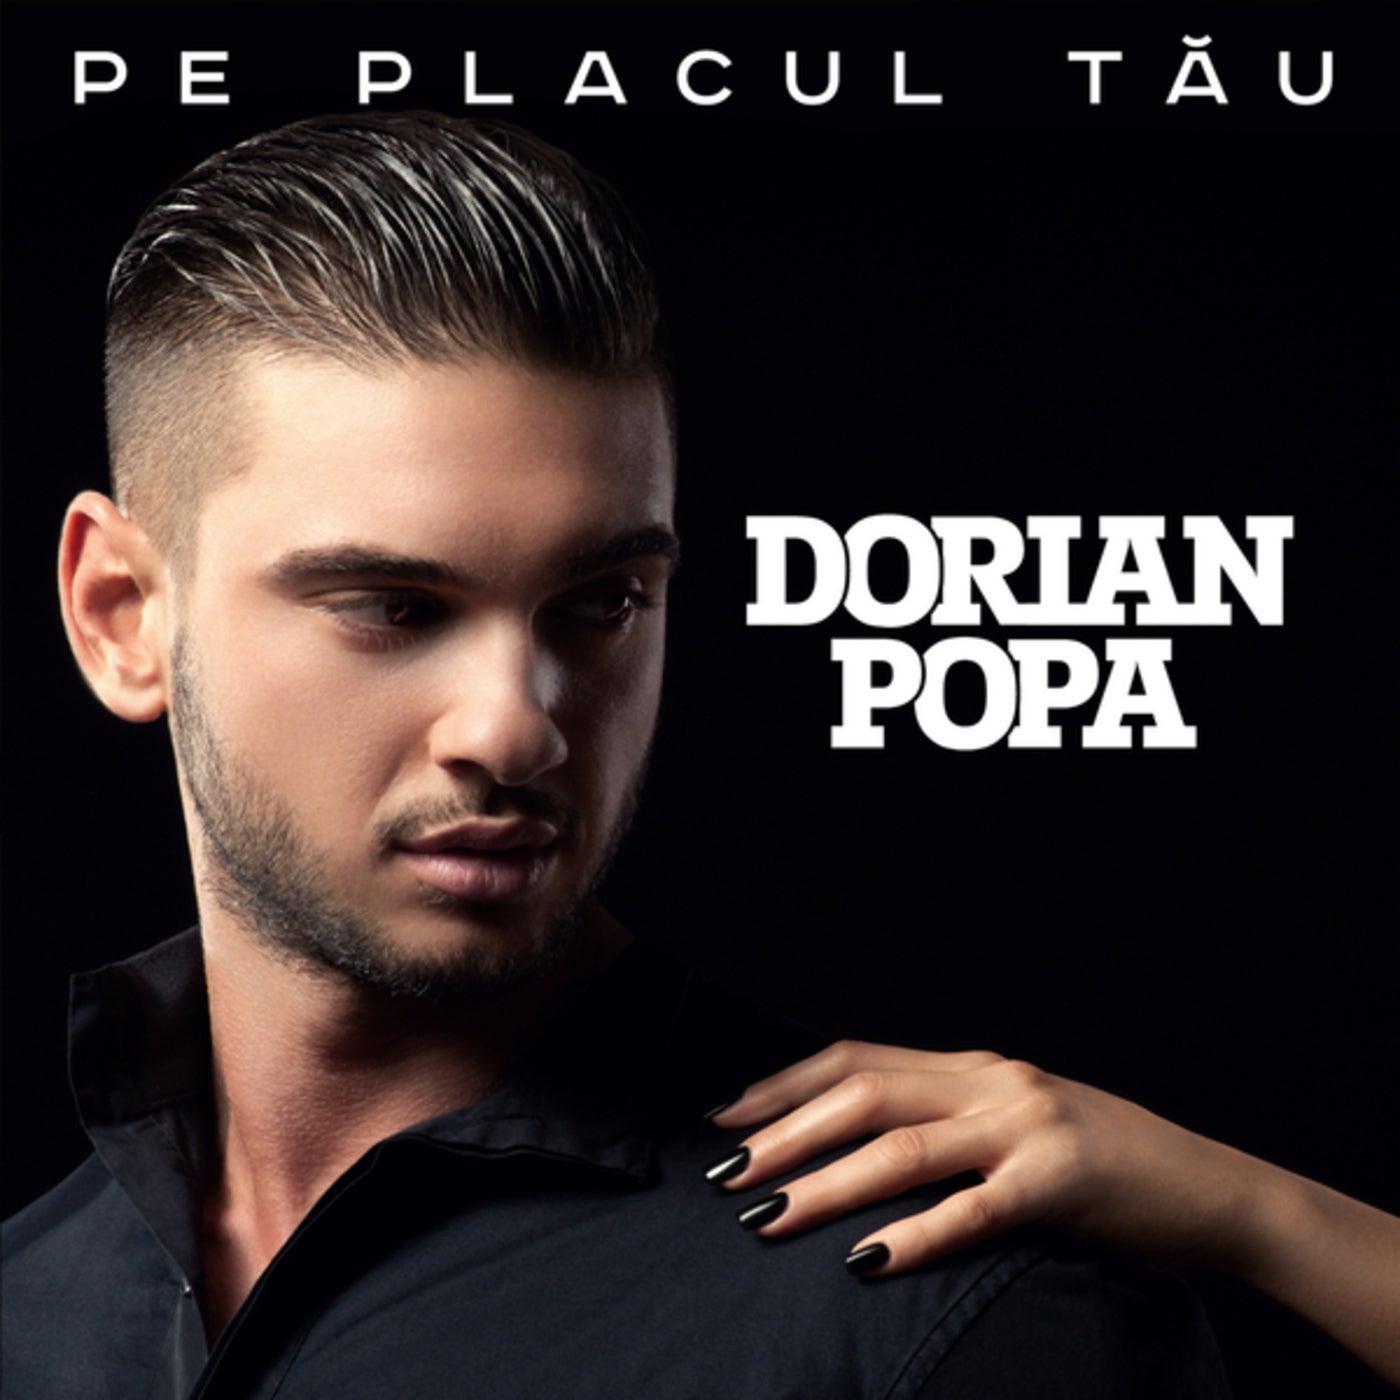 Pe placul tău by Dorian Popa on Beatsource